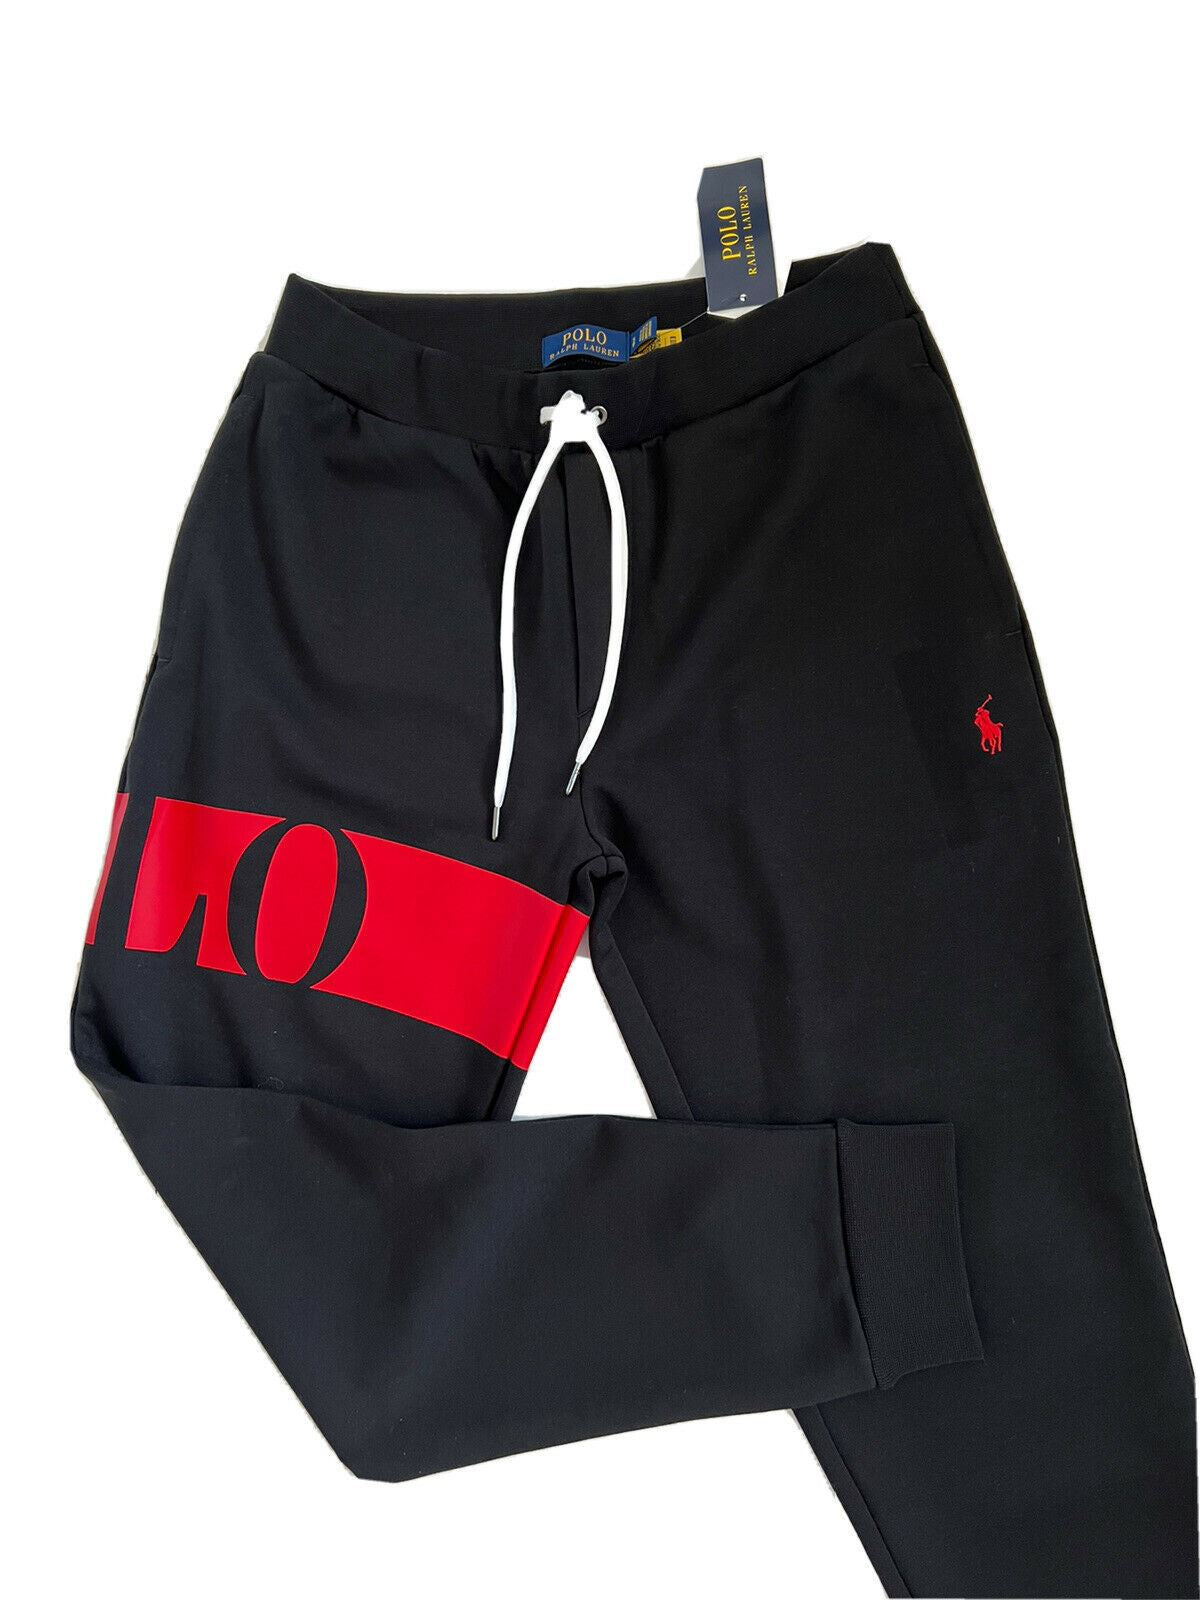 Neu mit Etikett: 125 $ Polo Ralph Lauren Herren-Freizeithose mit großem Polo-Logo in Schwarz, Größe S